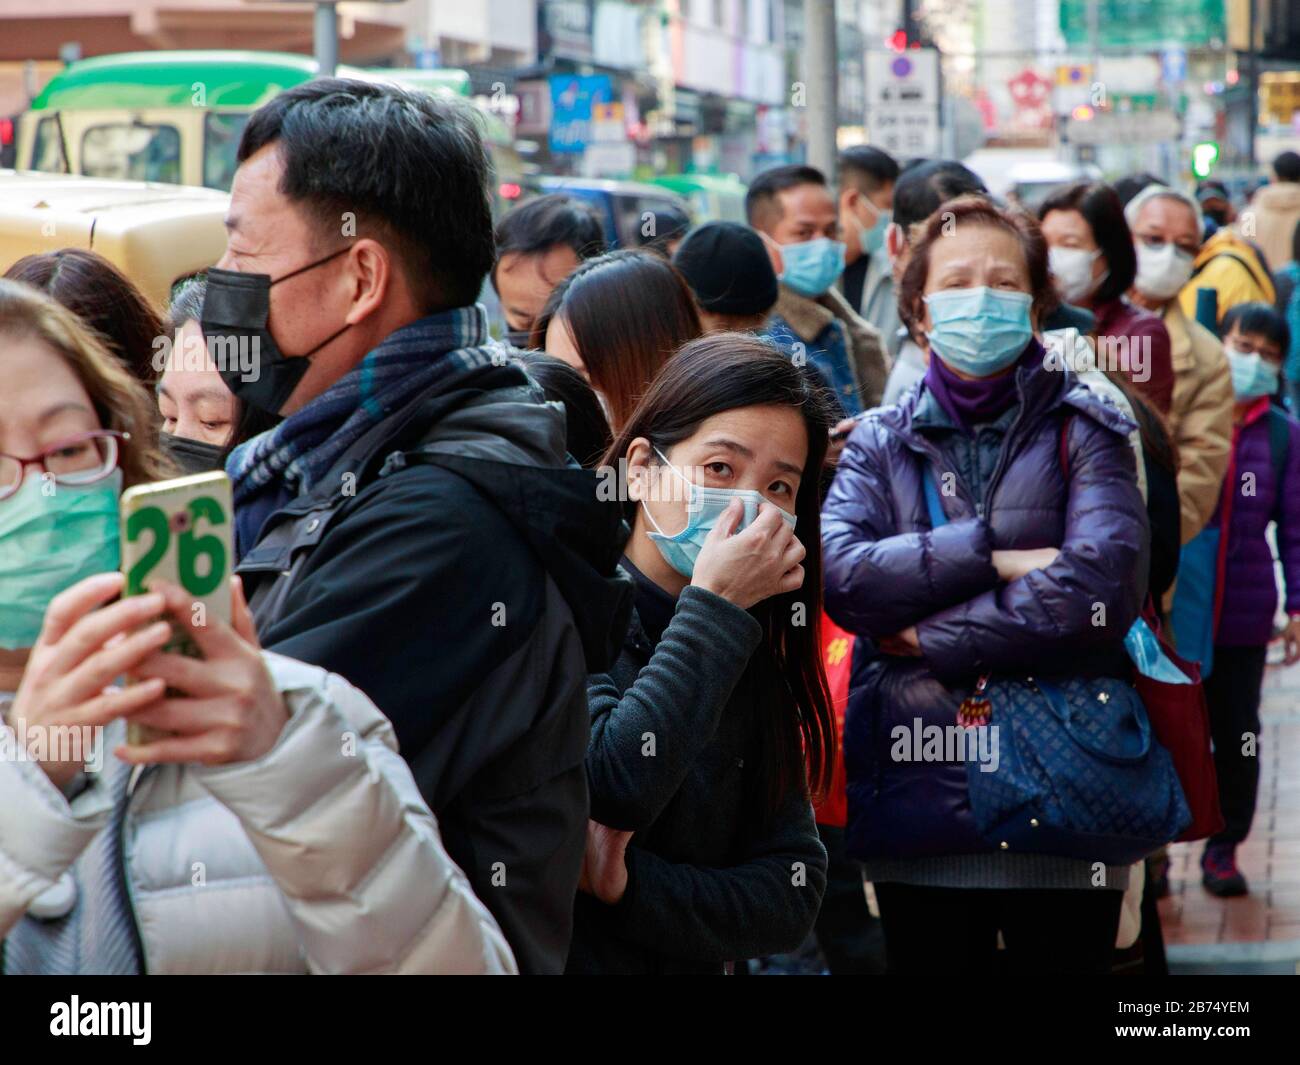 Die Menschen stehen bereit, um kostenlose chirurgische Masken aus einer Apotheke in Hongkong zu bekommen. Jede Person kann 3 Masken erhalten. Stockfoto